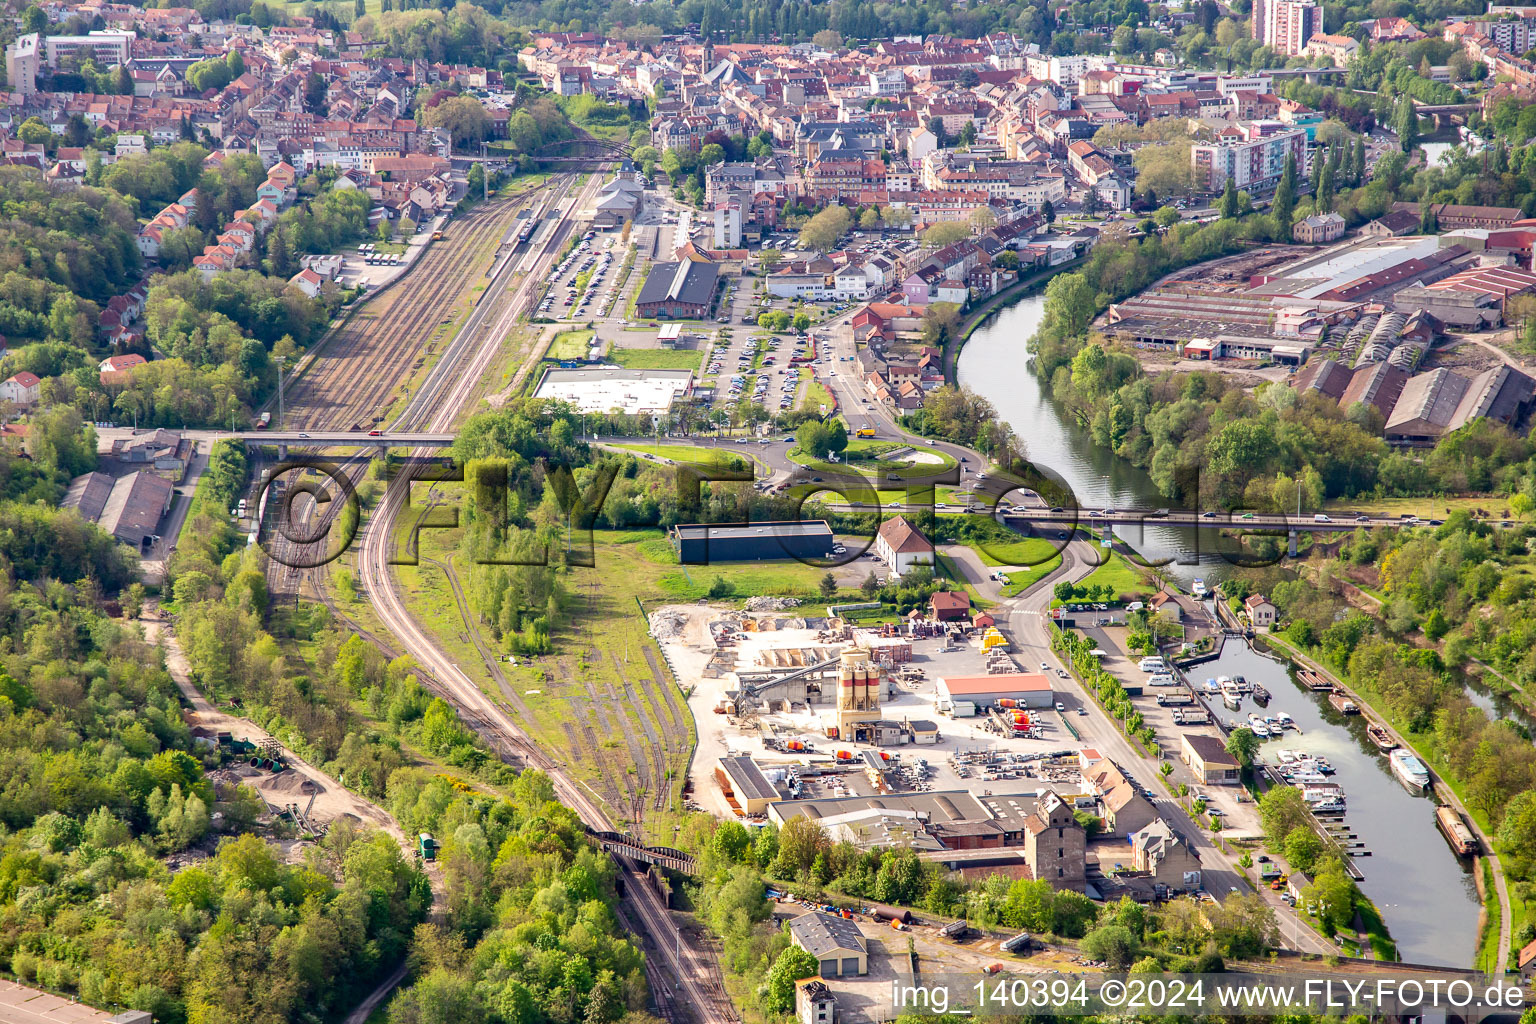 Vue aérienne de Gare et port de plaisance à l'écluse 27 de Saargemünd sur le canal Sarre-Kohlen "Canal des houillères de la Sarr à Rémelfing dans le département Moselle, France